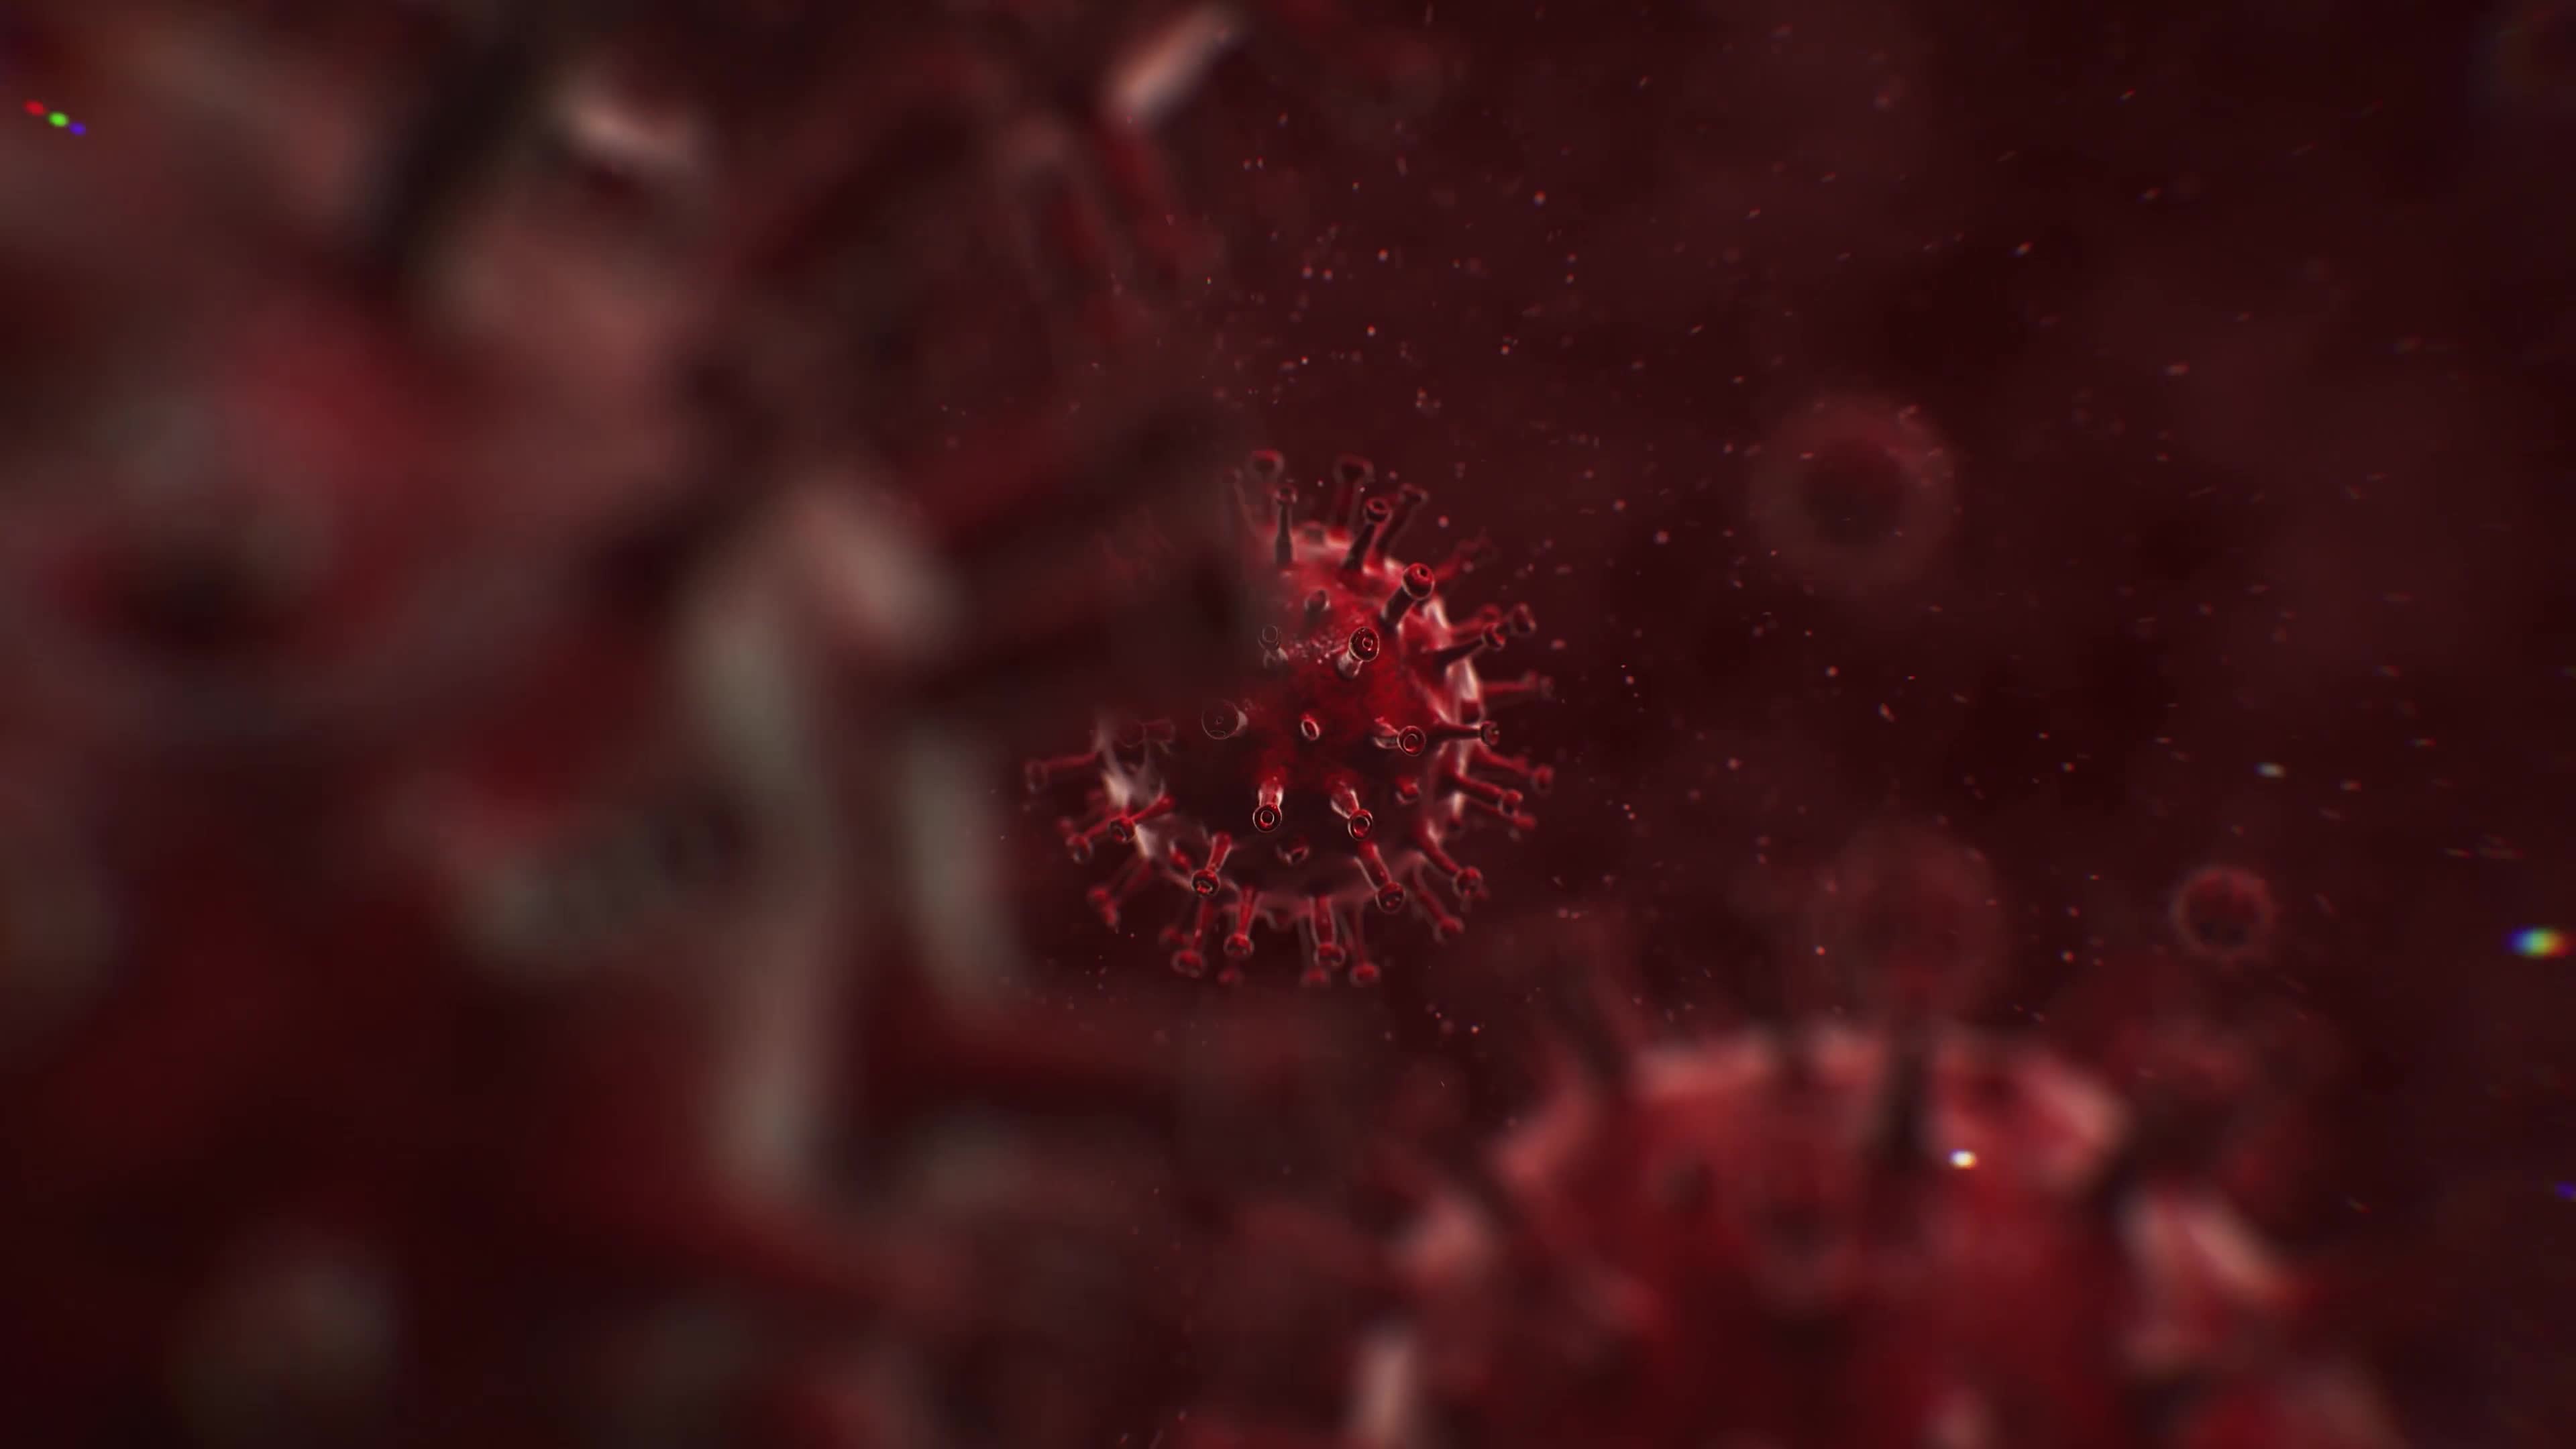 Virus Destruction Logo Reveal Videohive 26328449 Premiere Pro Image 1